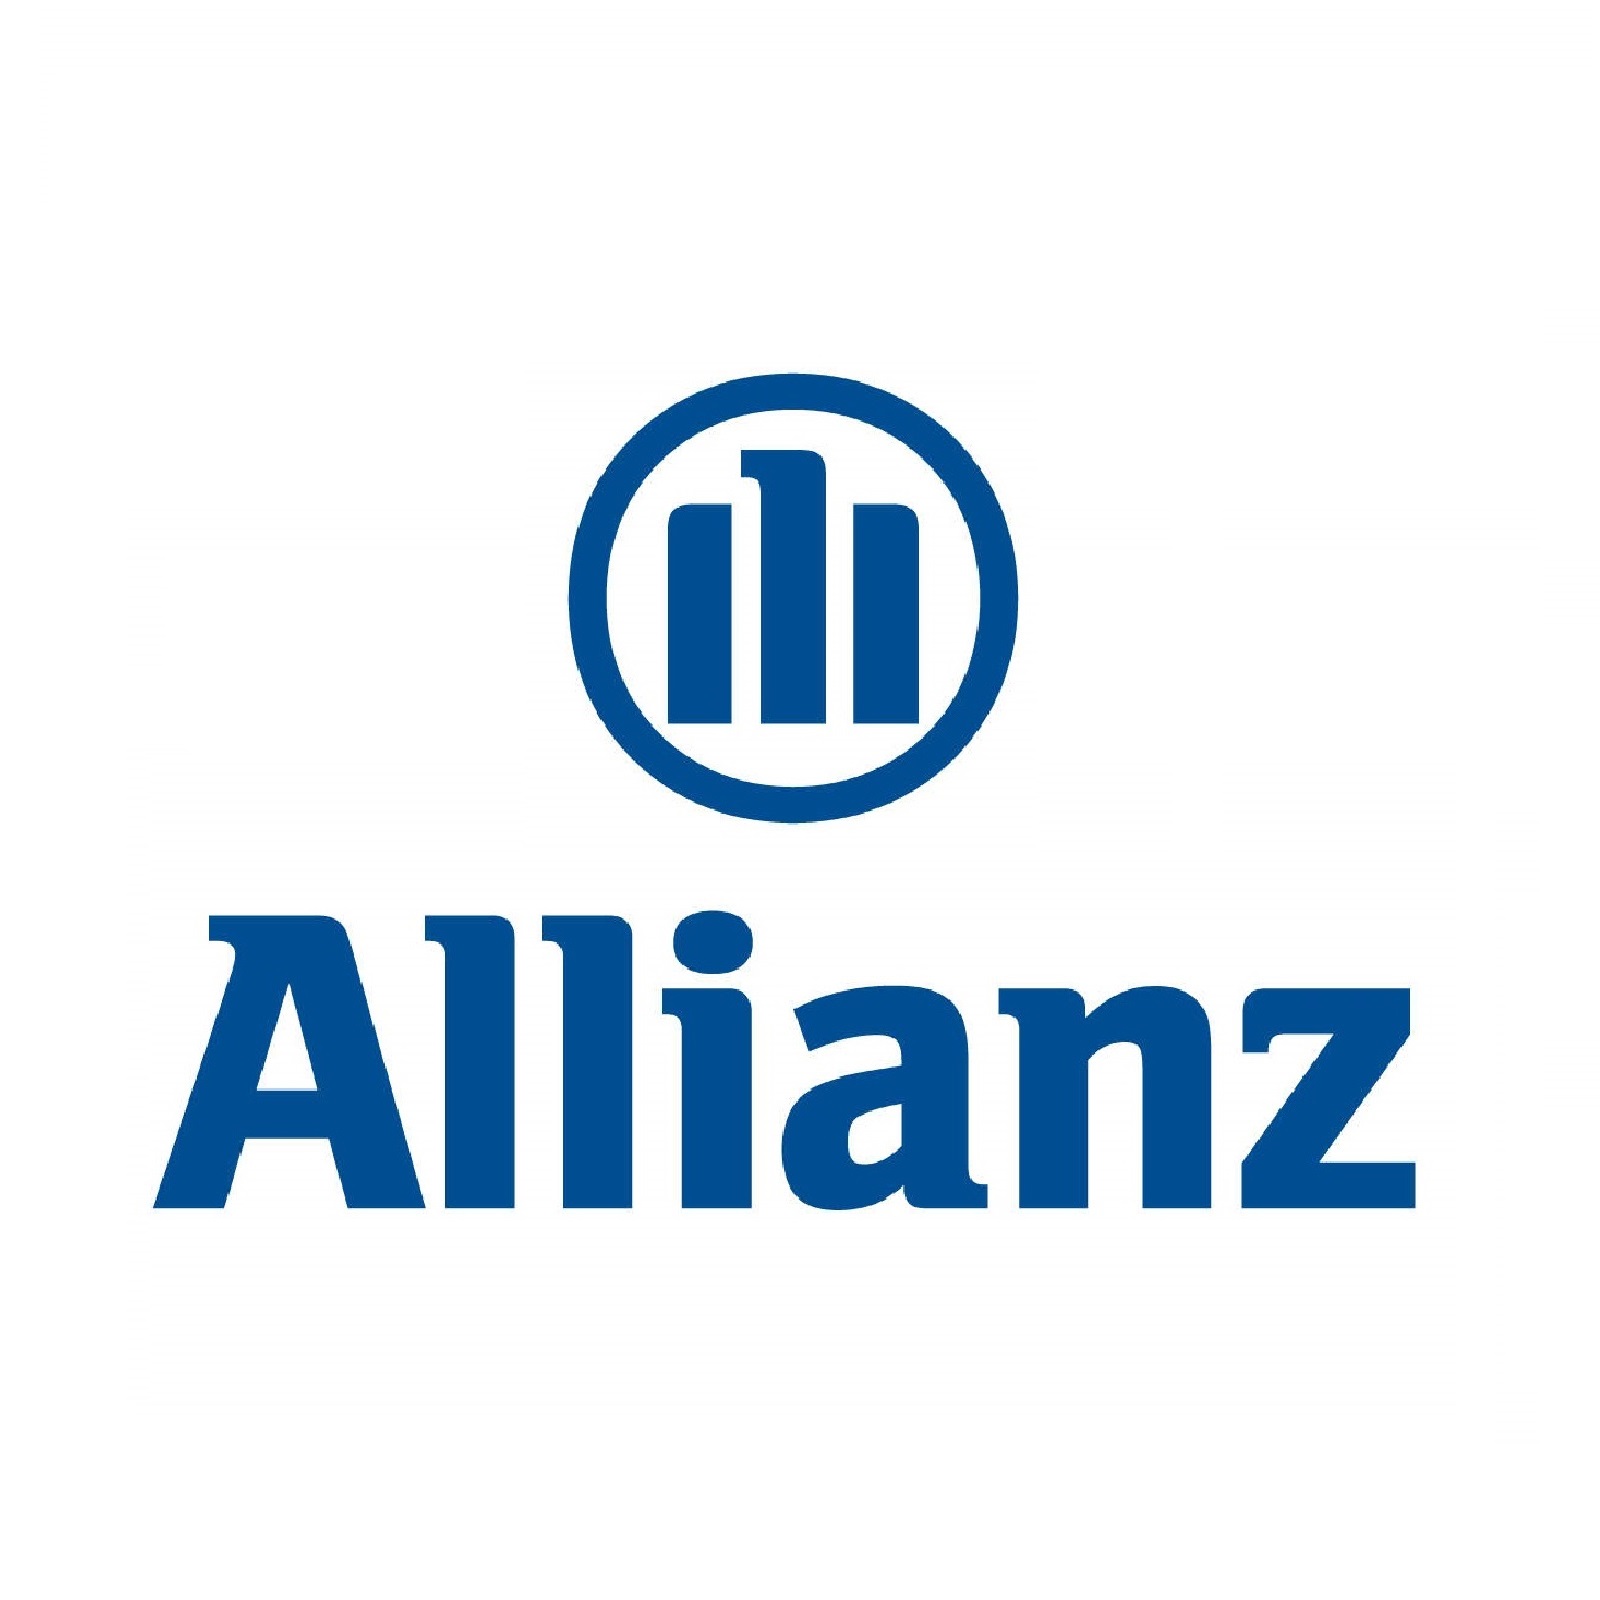 Allianz - Альянс СК - страховая компания - Альянс РОСНО Жизнь Российское страховое народное общество